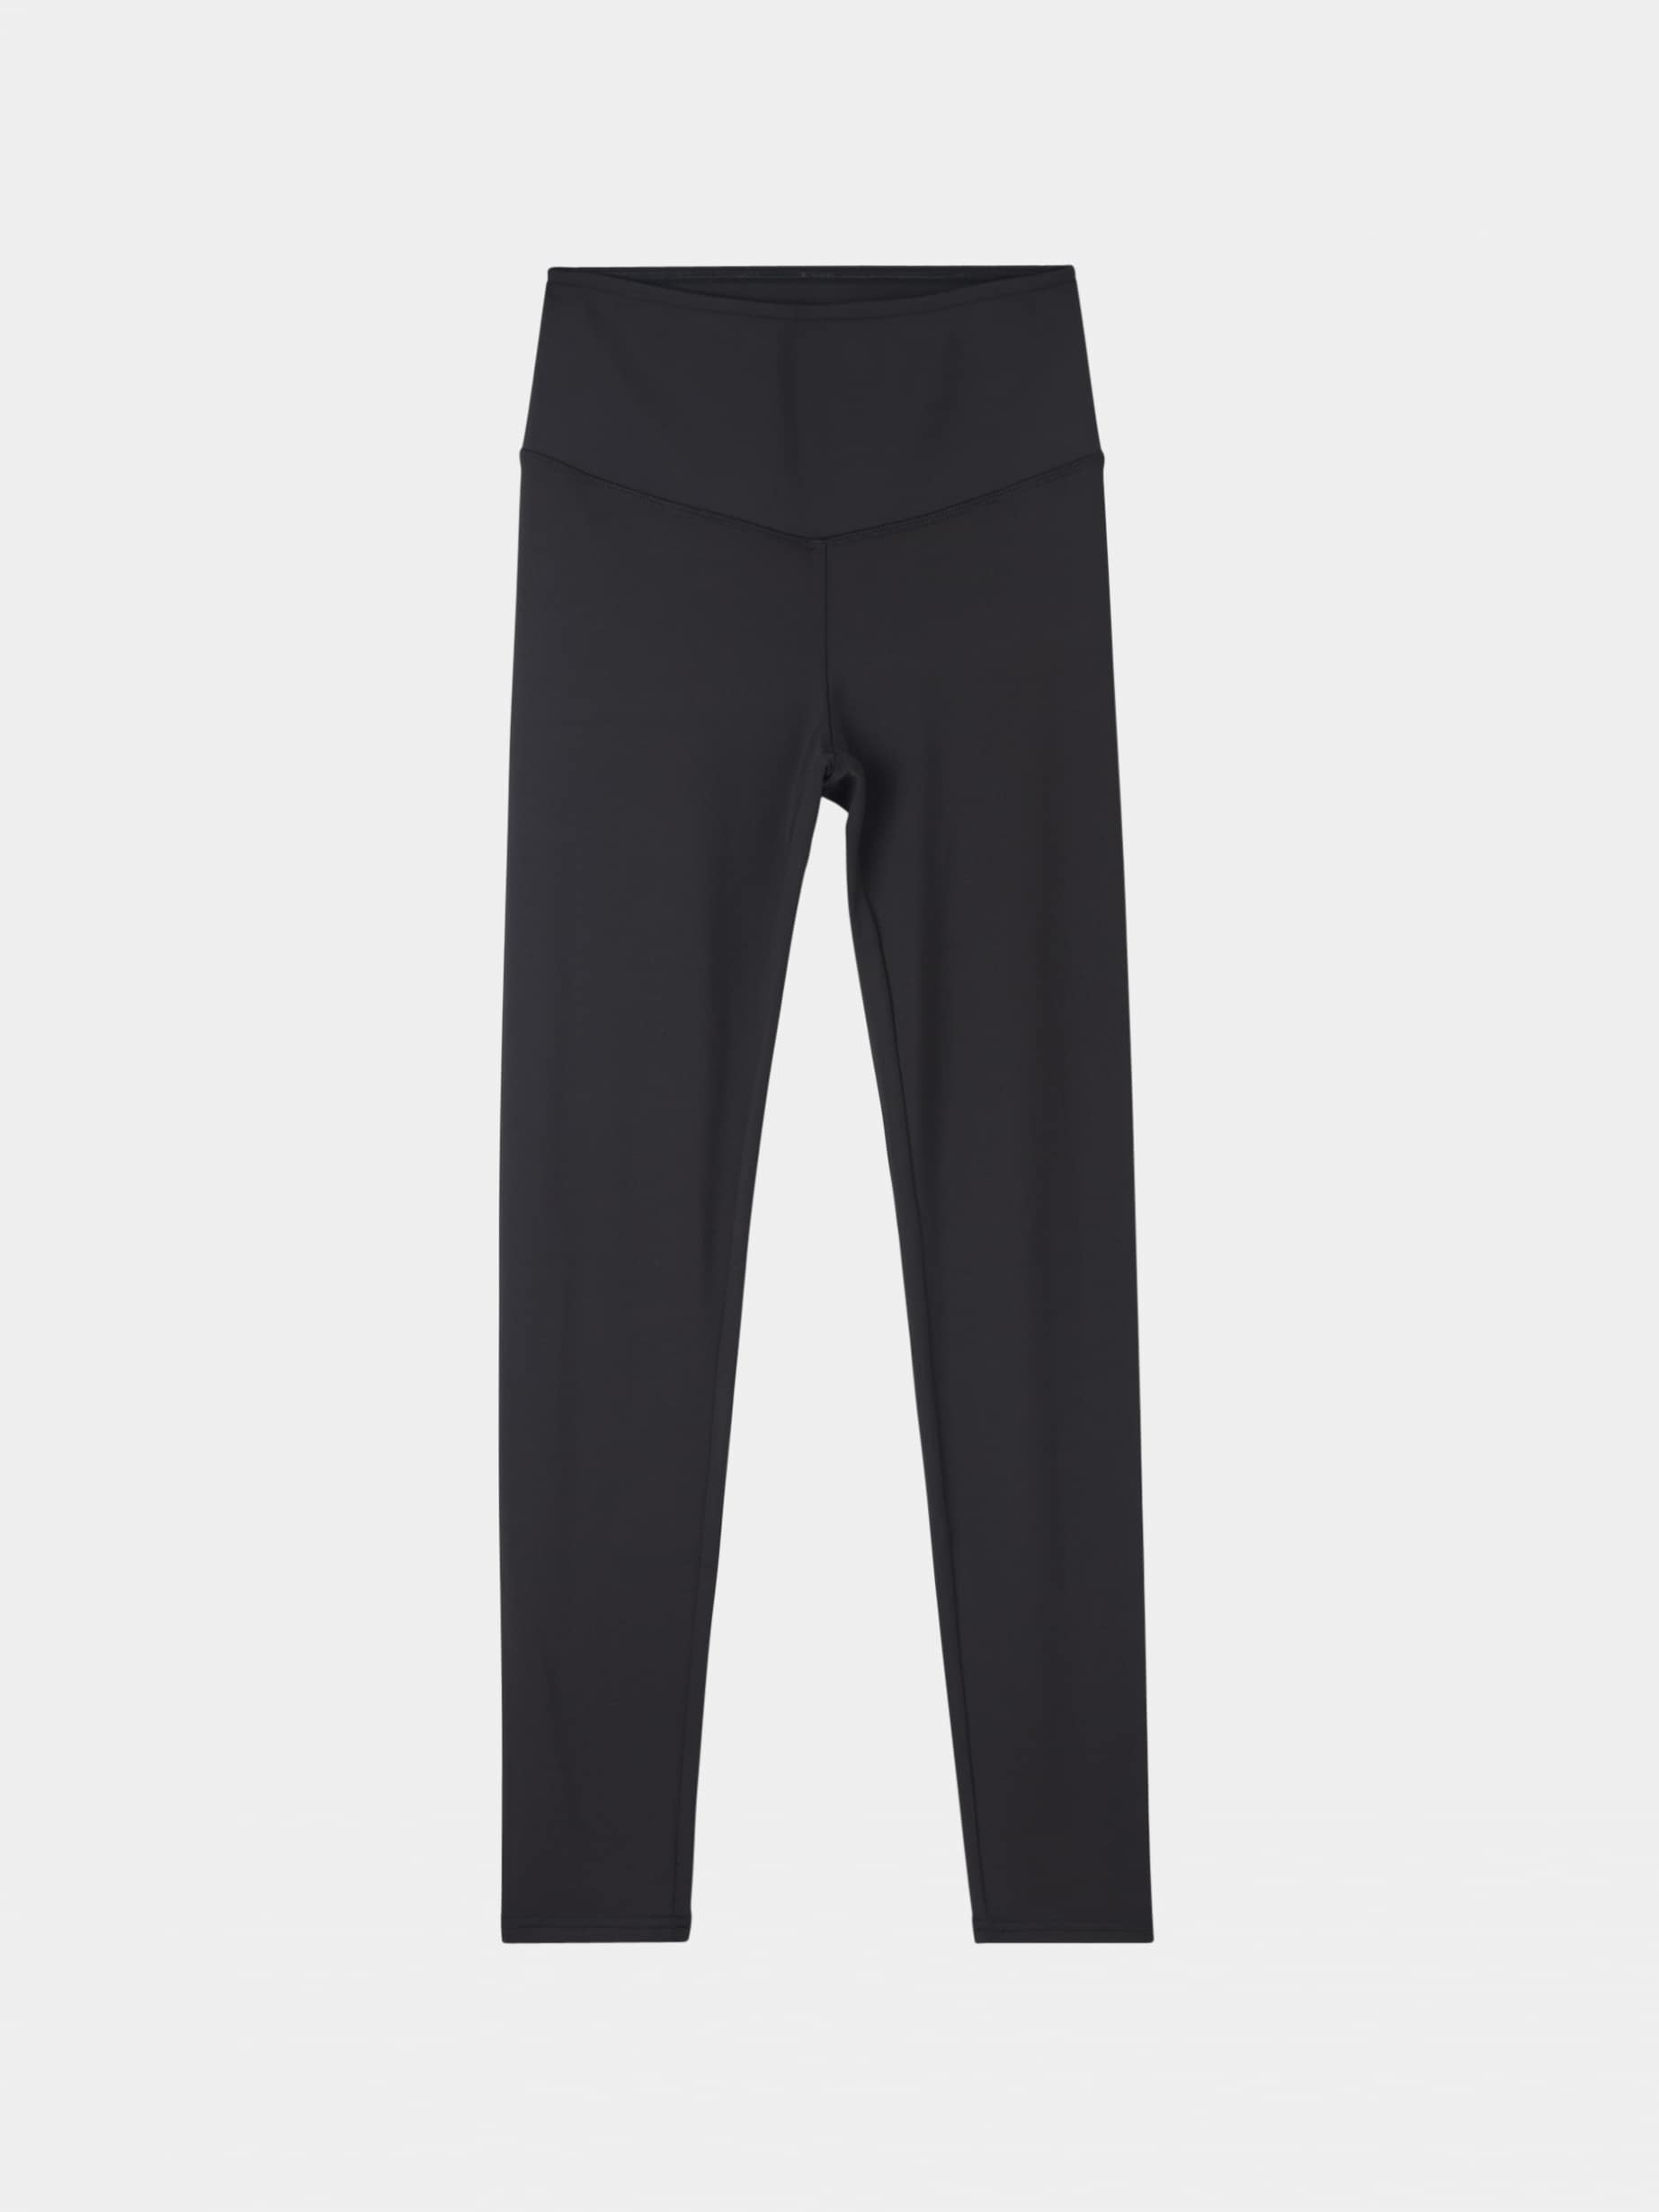 Black Plain shapewear leggings - Buy Online